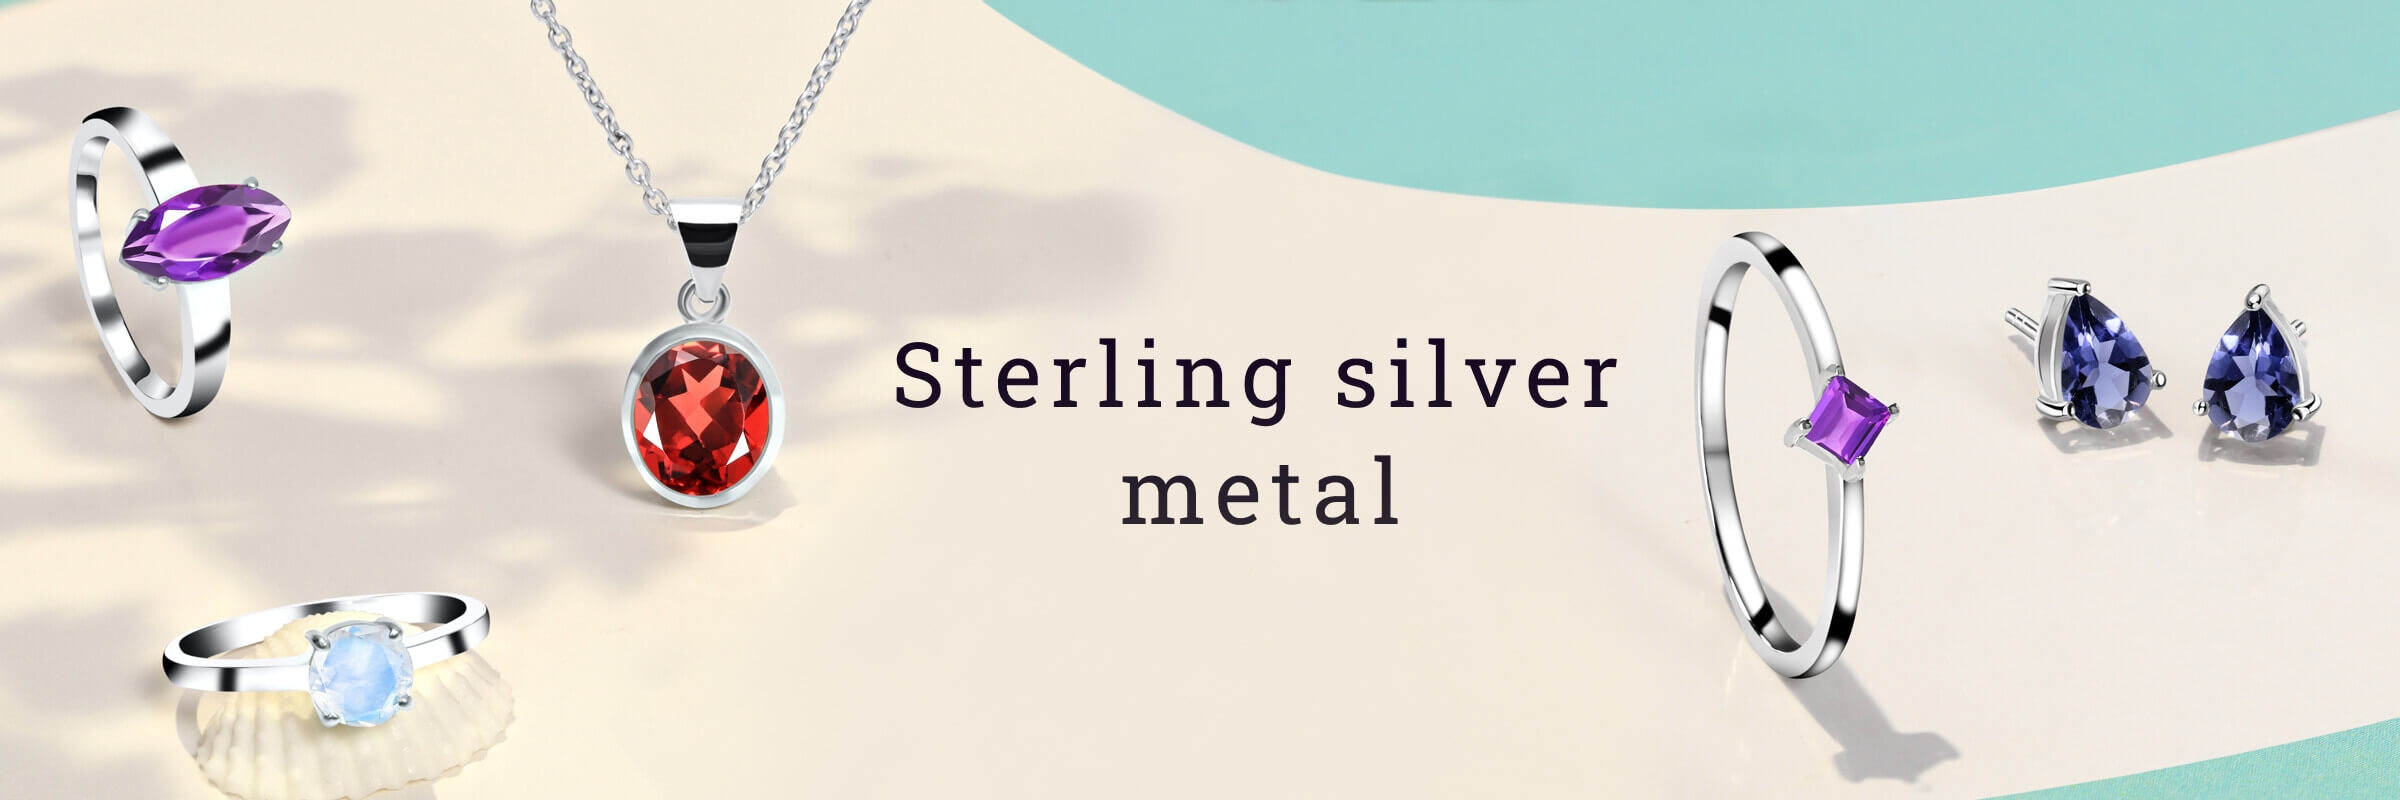 Sterling silver metal